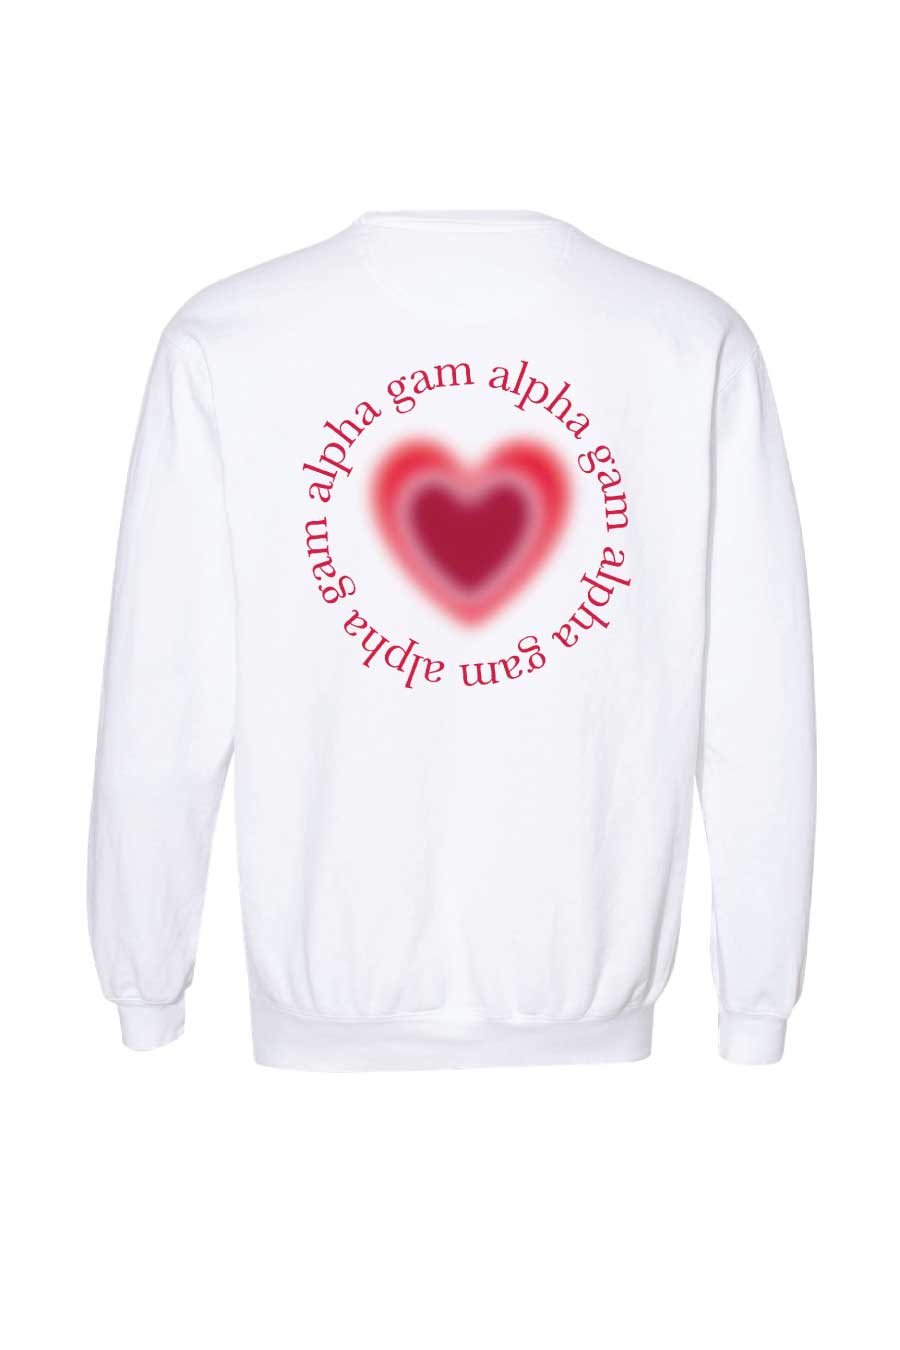 ★即決★【BOYFRIEND ボーイフレンド】 LOVE COMMUNICATION 2013 スタッフCREW用TシャツsizeM